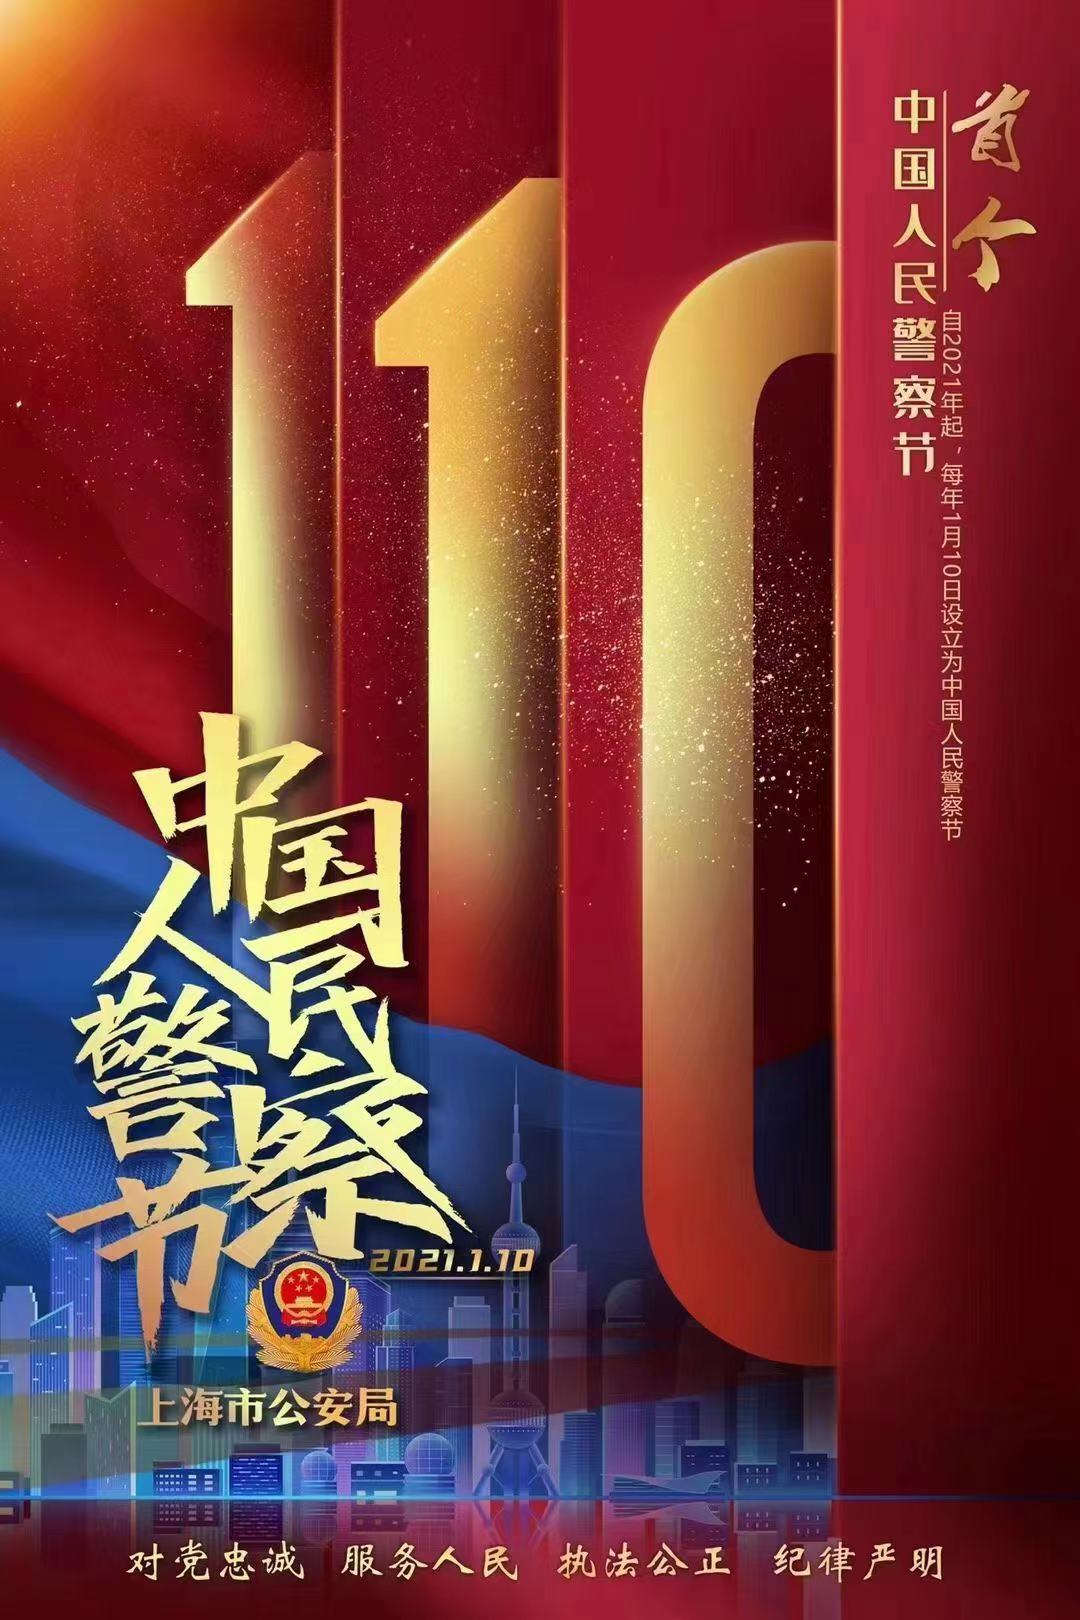 上海公安与喜马拉雅合作共推全新有声剧，献礼“中国人民警察节”